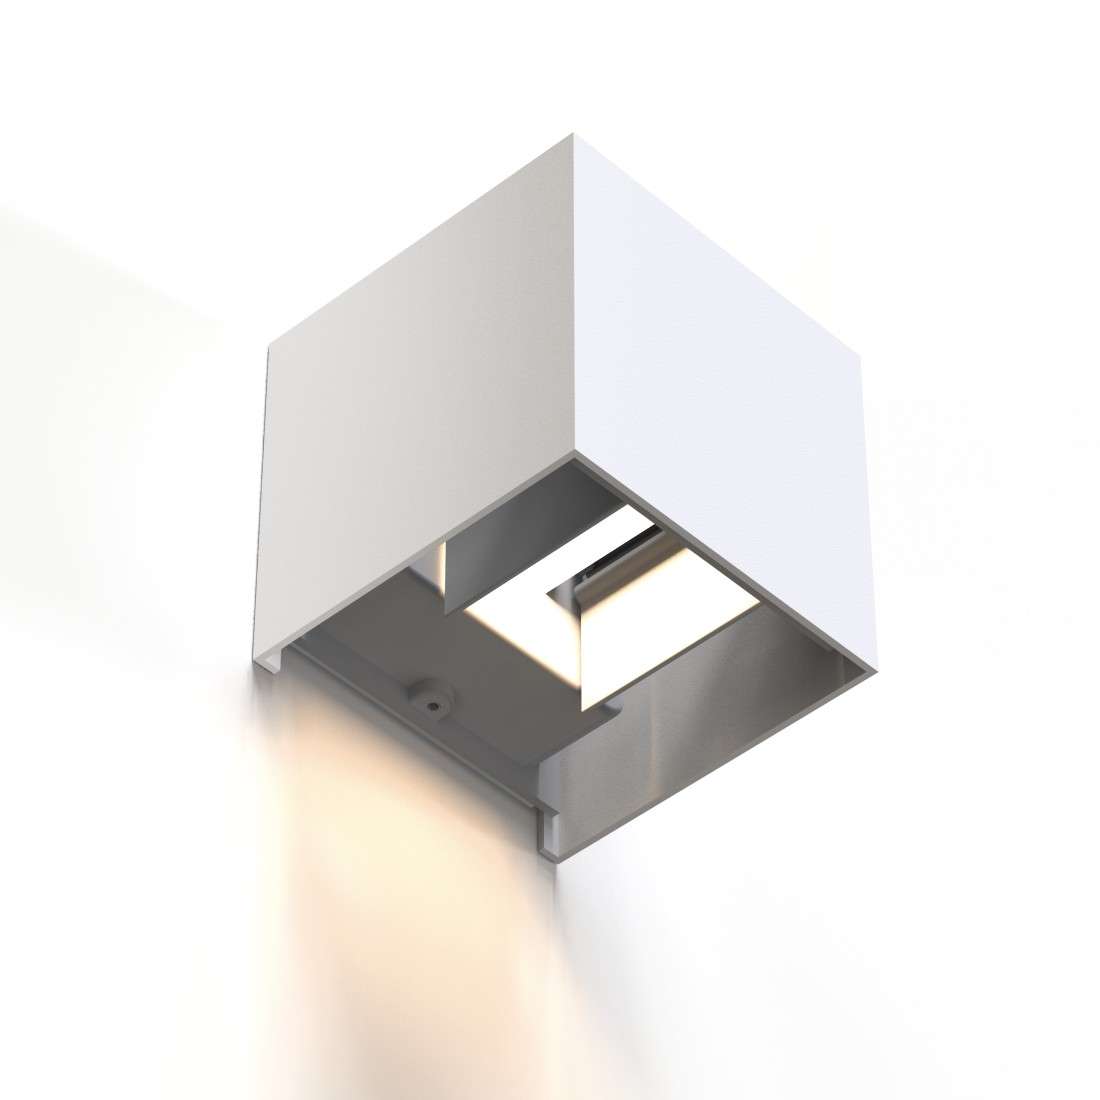 HAMA LED Wandlampe für innen und außen, WLAN, App- u. Sprachsteuerung, Weiß